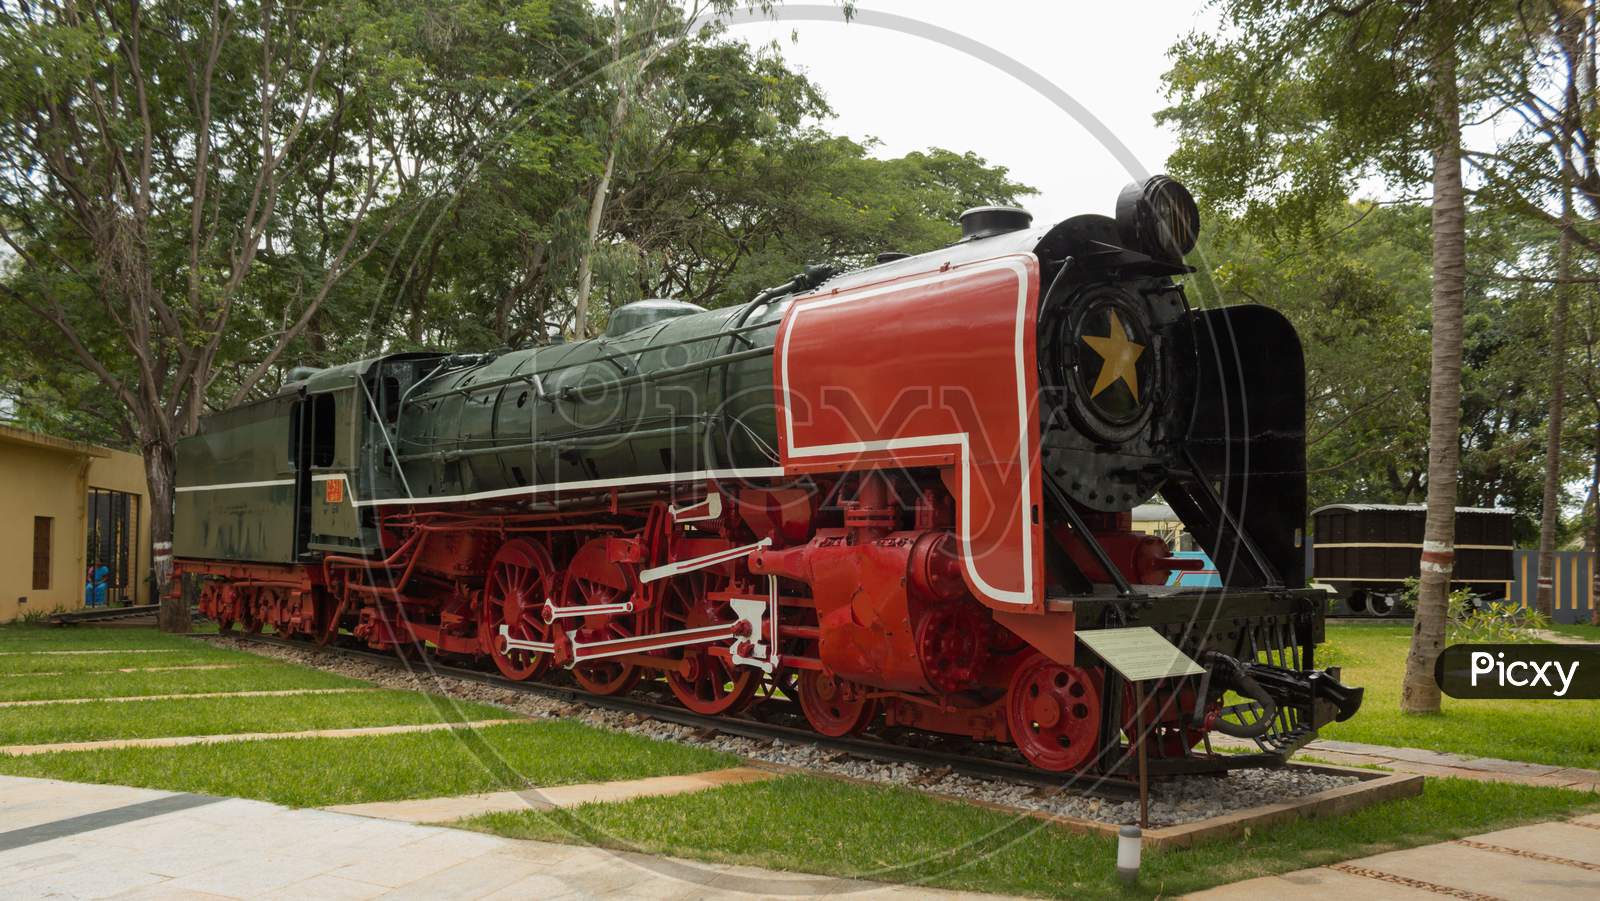 Heritage Steam Engine in Mysore rail museum in Karnataka/India.